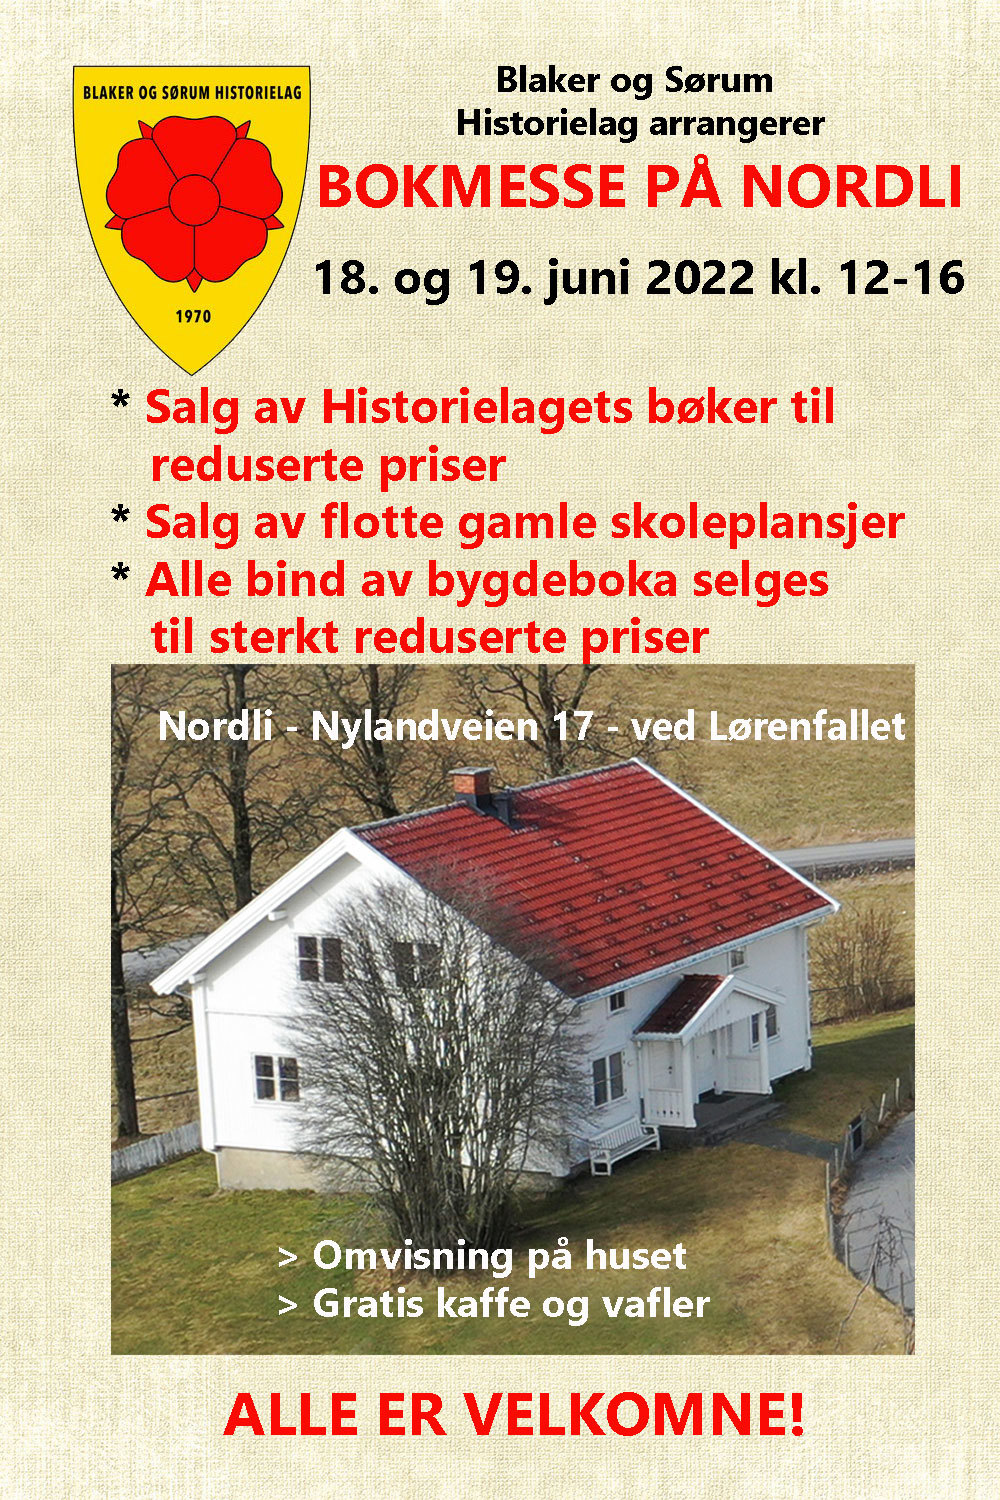 Bokmesse på Nordli 18. og 19. juni 2022